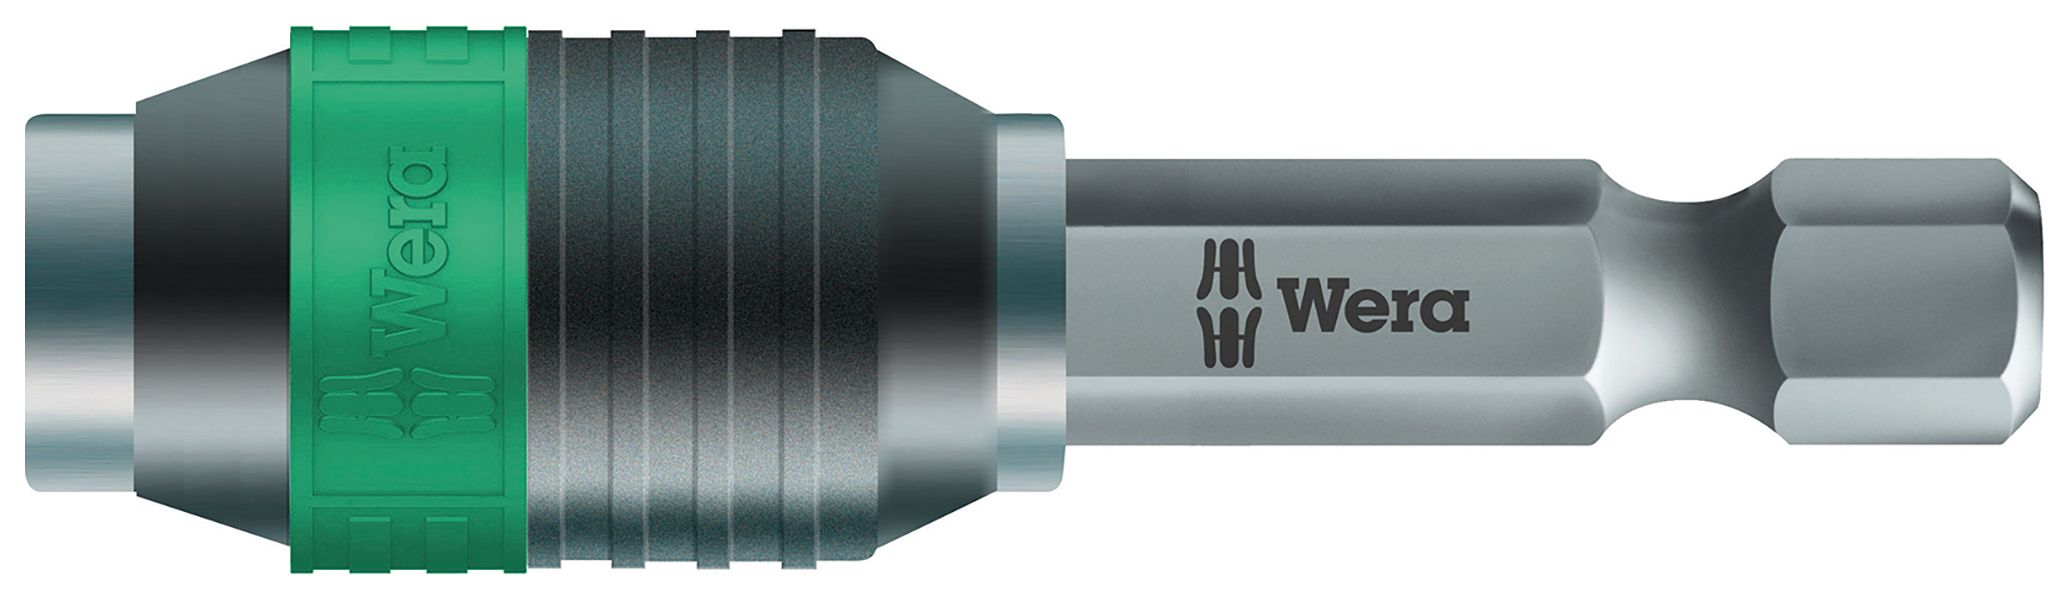 Wera 889/4/1K SB Rapidaptor Universal Bit Holder - 1/4in x 50mm